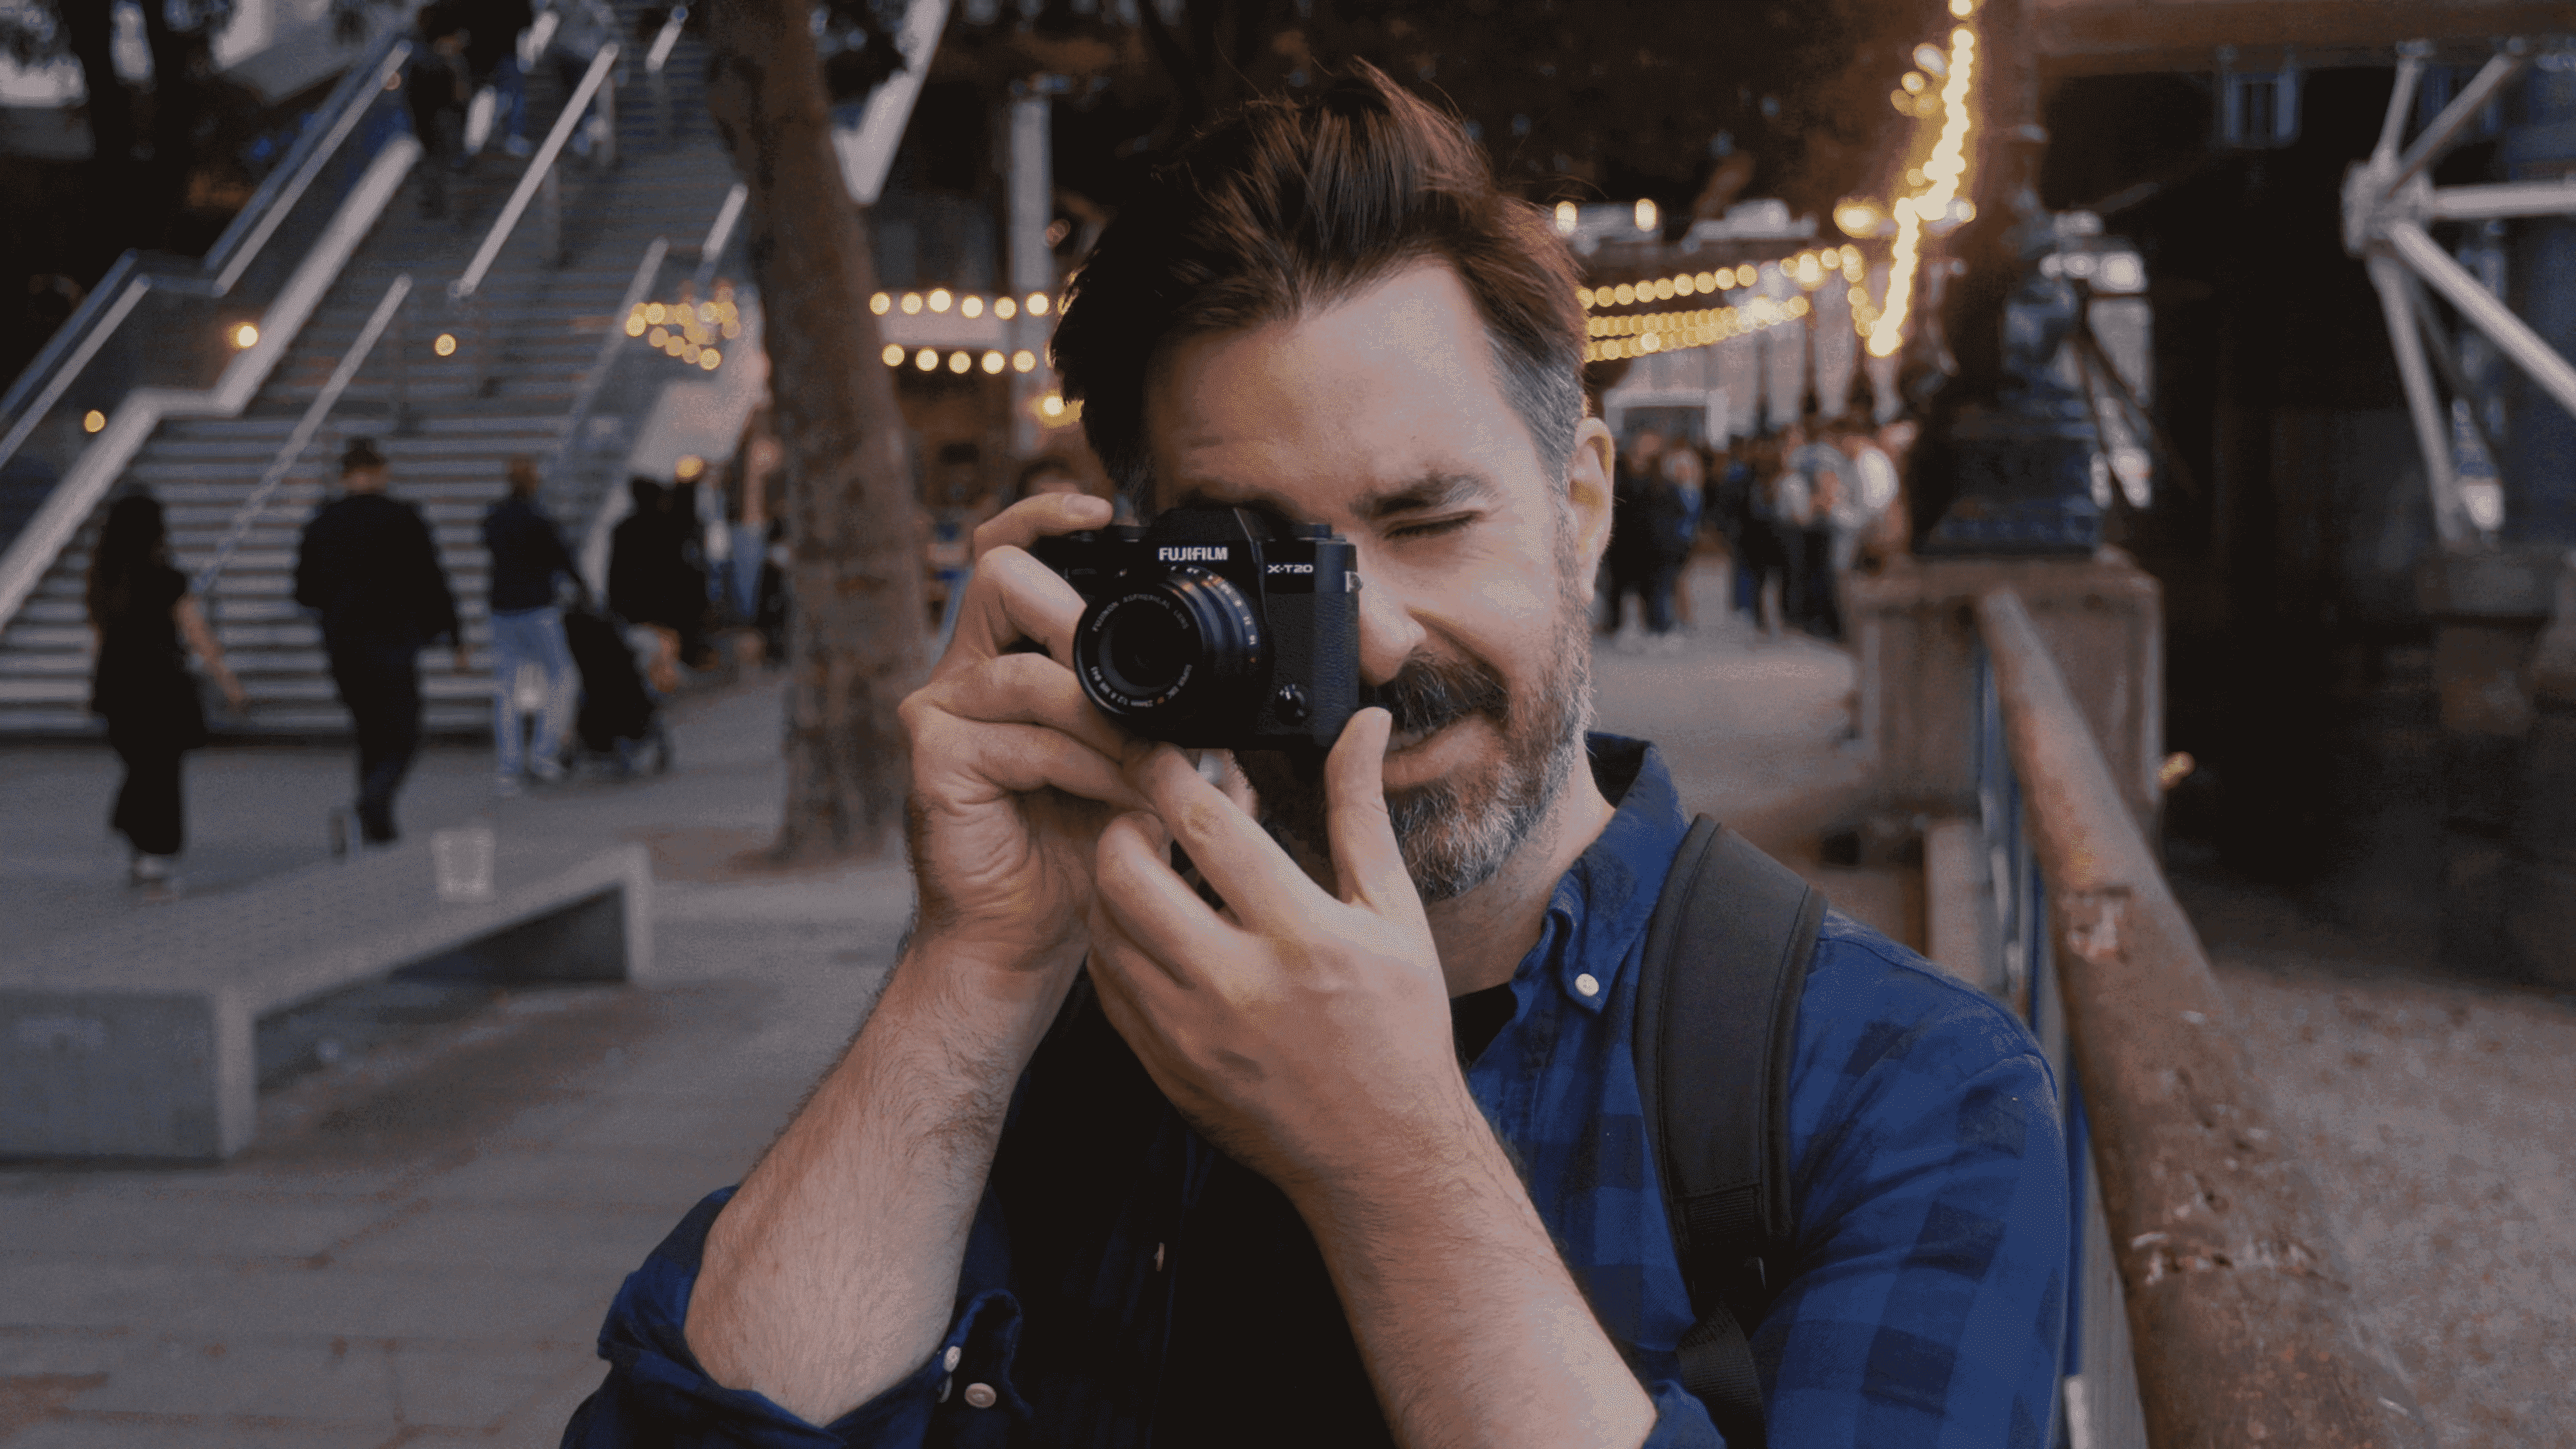 Fujifilm kamerasının lens bulucusundan bakan adam